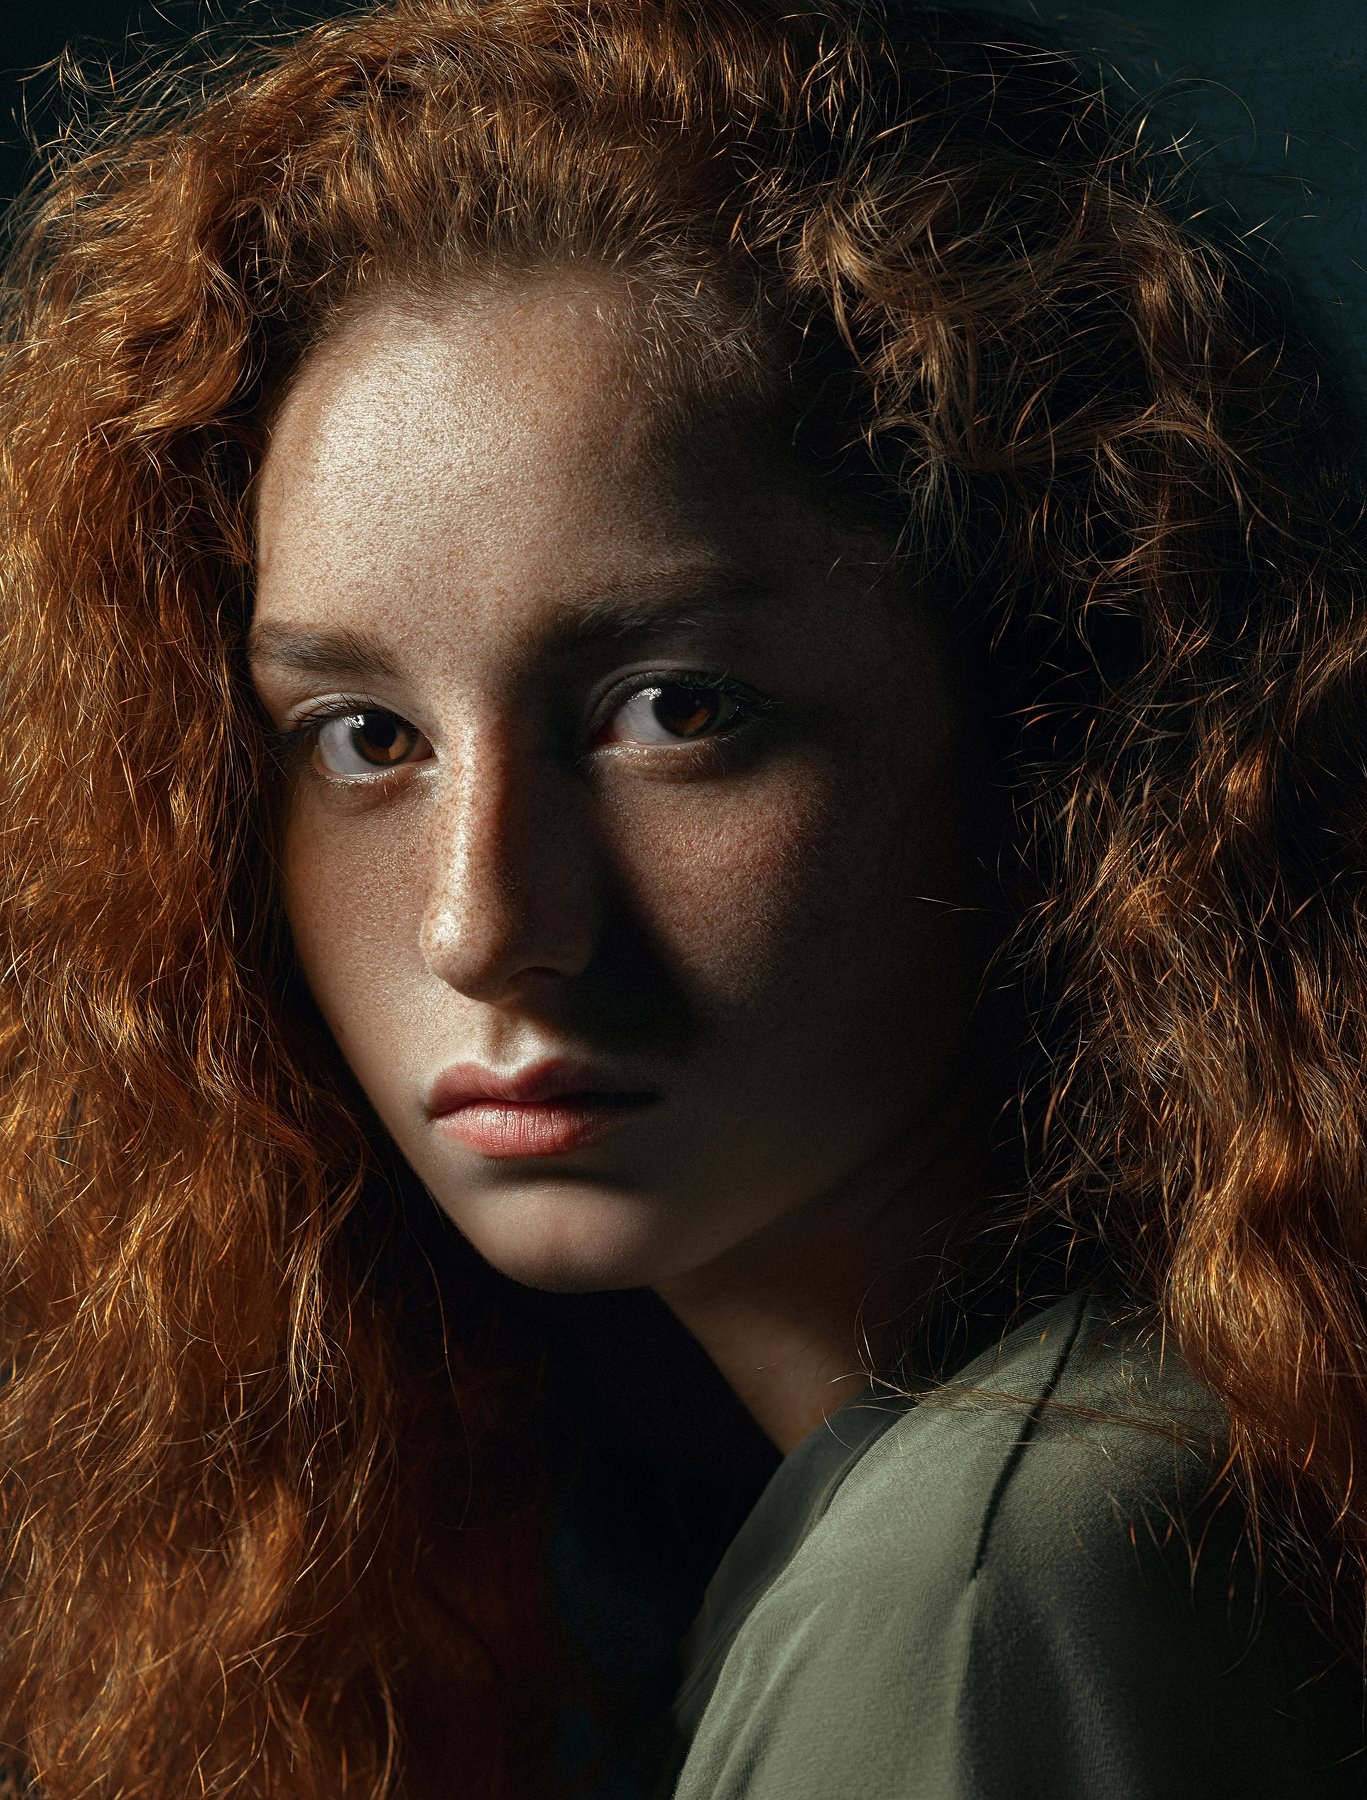 #взгляд #sight #портрет #redhead #portrait #portraitphotography #рыжая #рыжик, Борис Тменов